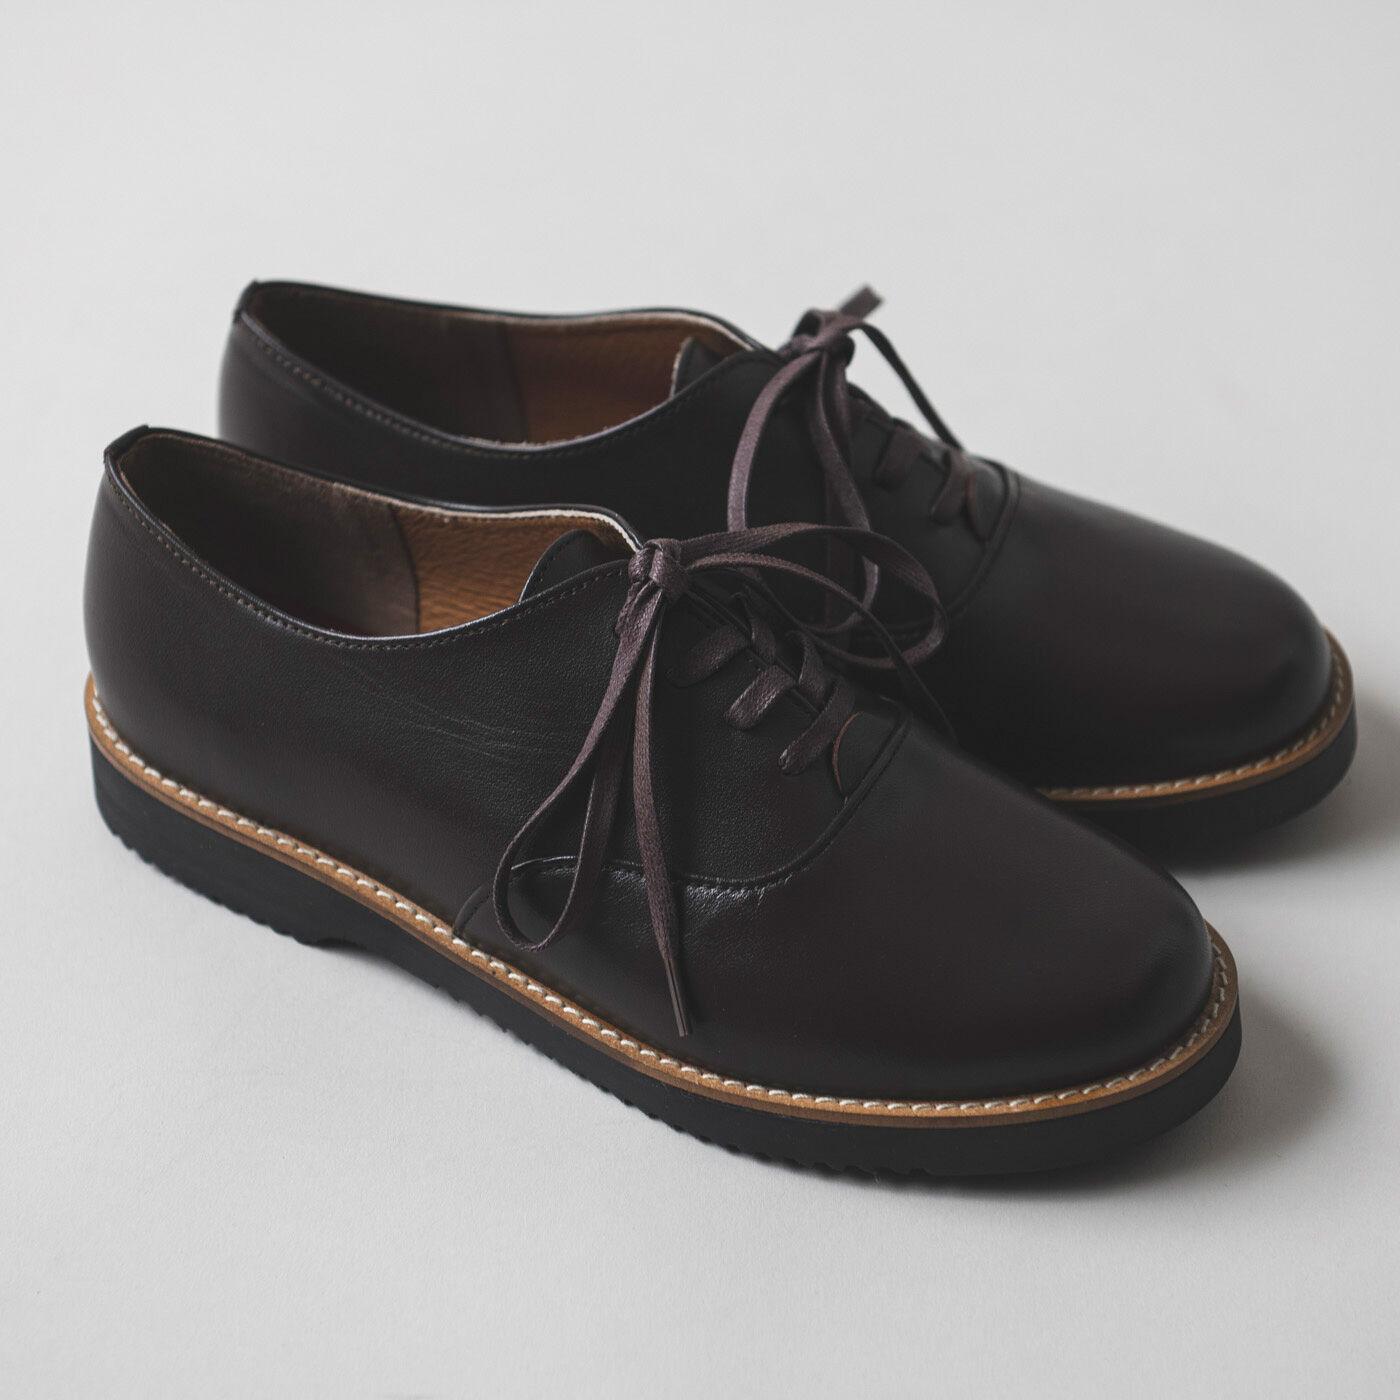 ＆Stories|長田の靴職人が作った 職人本革のポストマンシューズ〈ダークブラウン〉|一見するとブラック1色のような深いダークブラウンですが、実はダークブラウン×ブラックの2色遣いというおしゃれ上級者な仕様です。